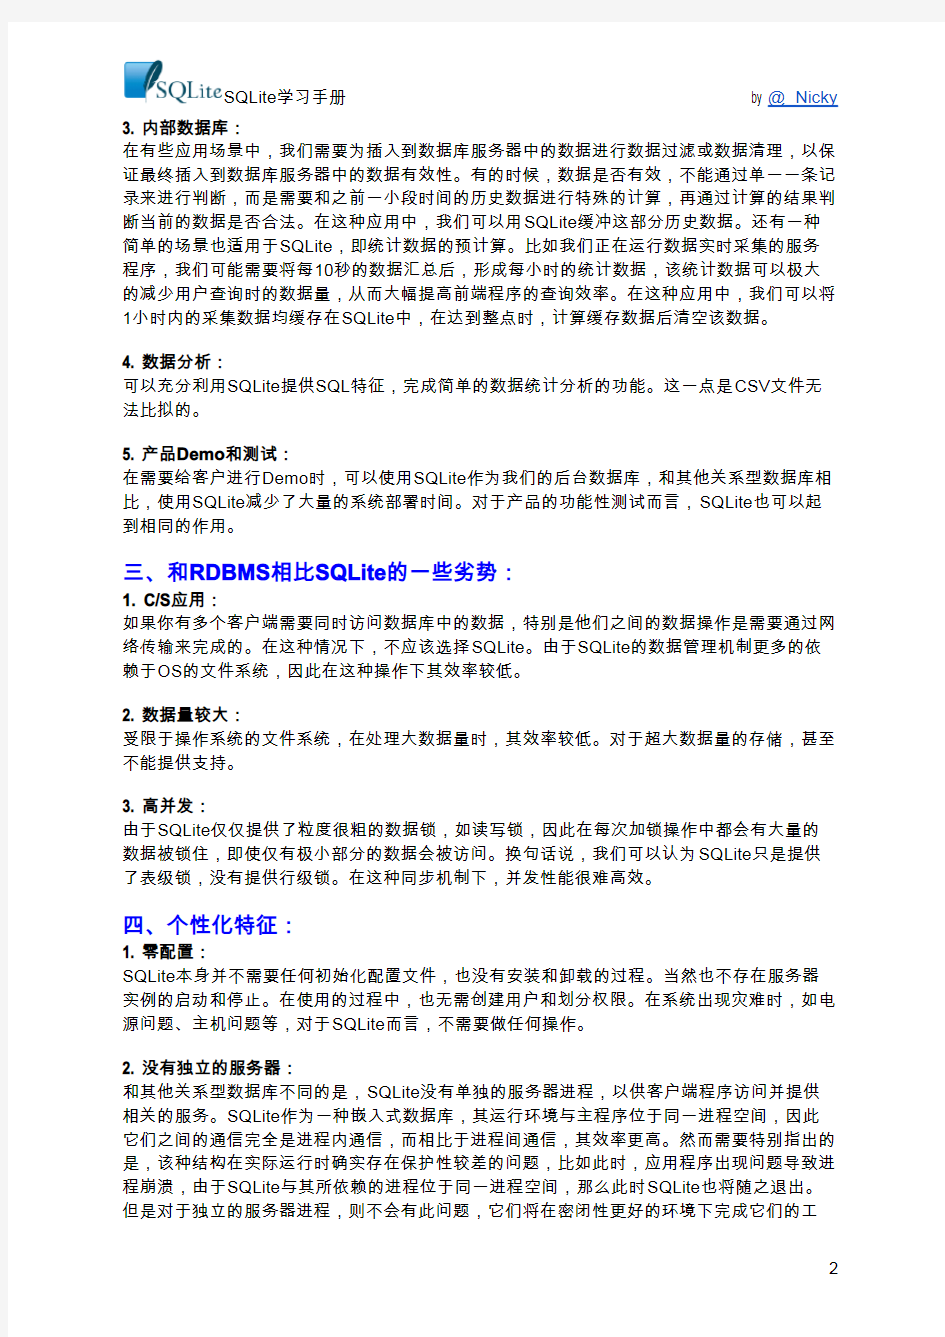 SQLite学习手册 中文全本